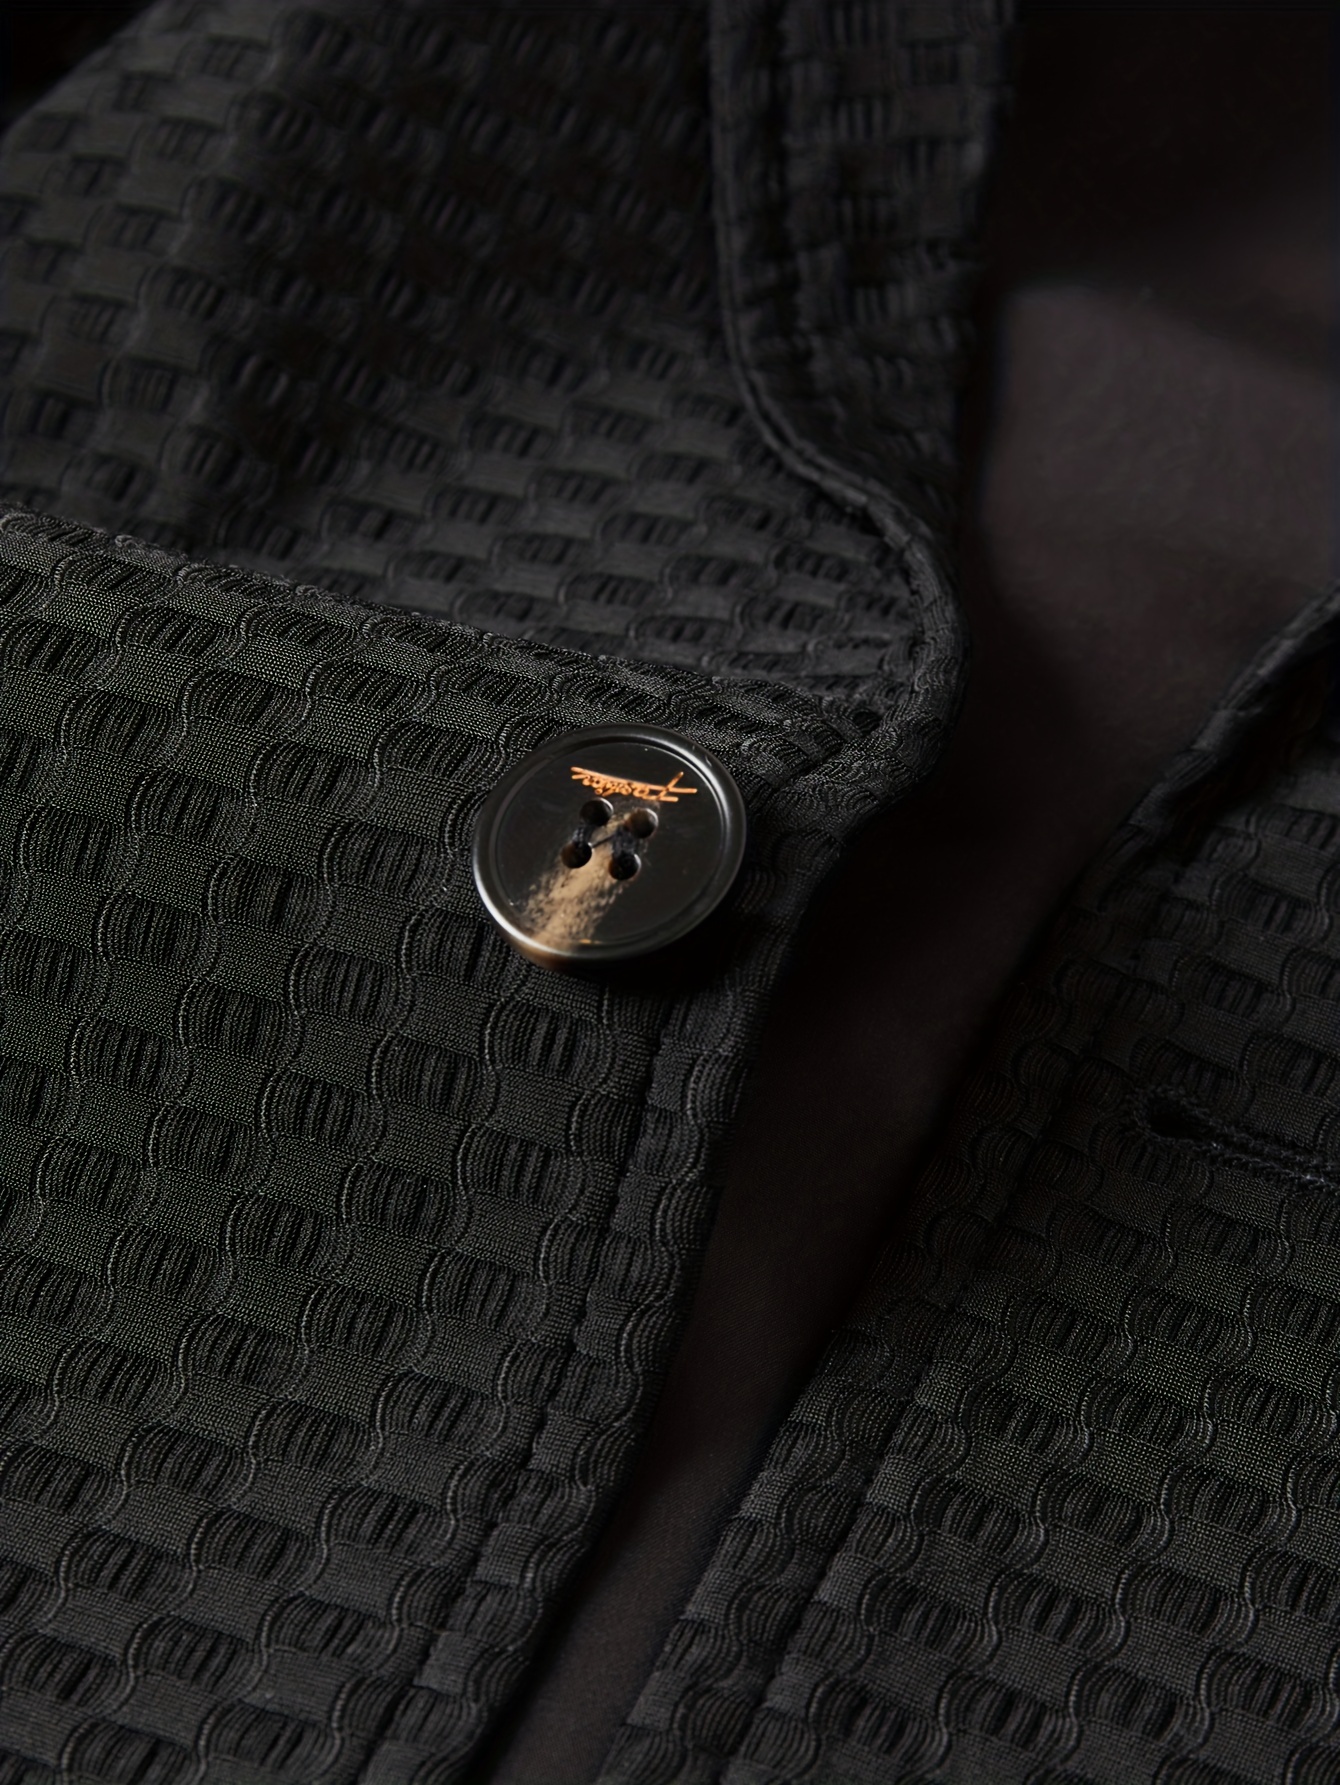 Letter Print Two Button Blazer, Men's Semi-formal Suit Jacket For Business  Banquet - Temu Austria